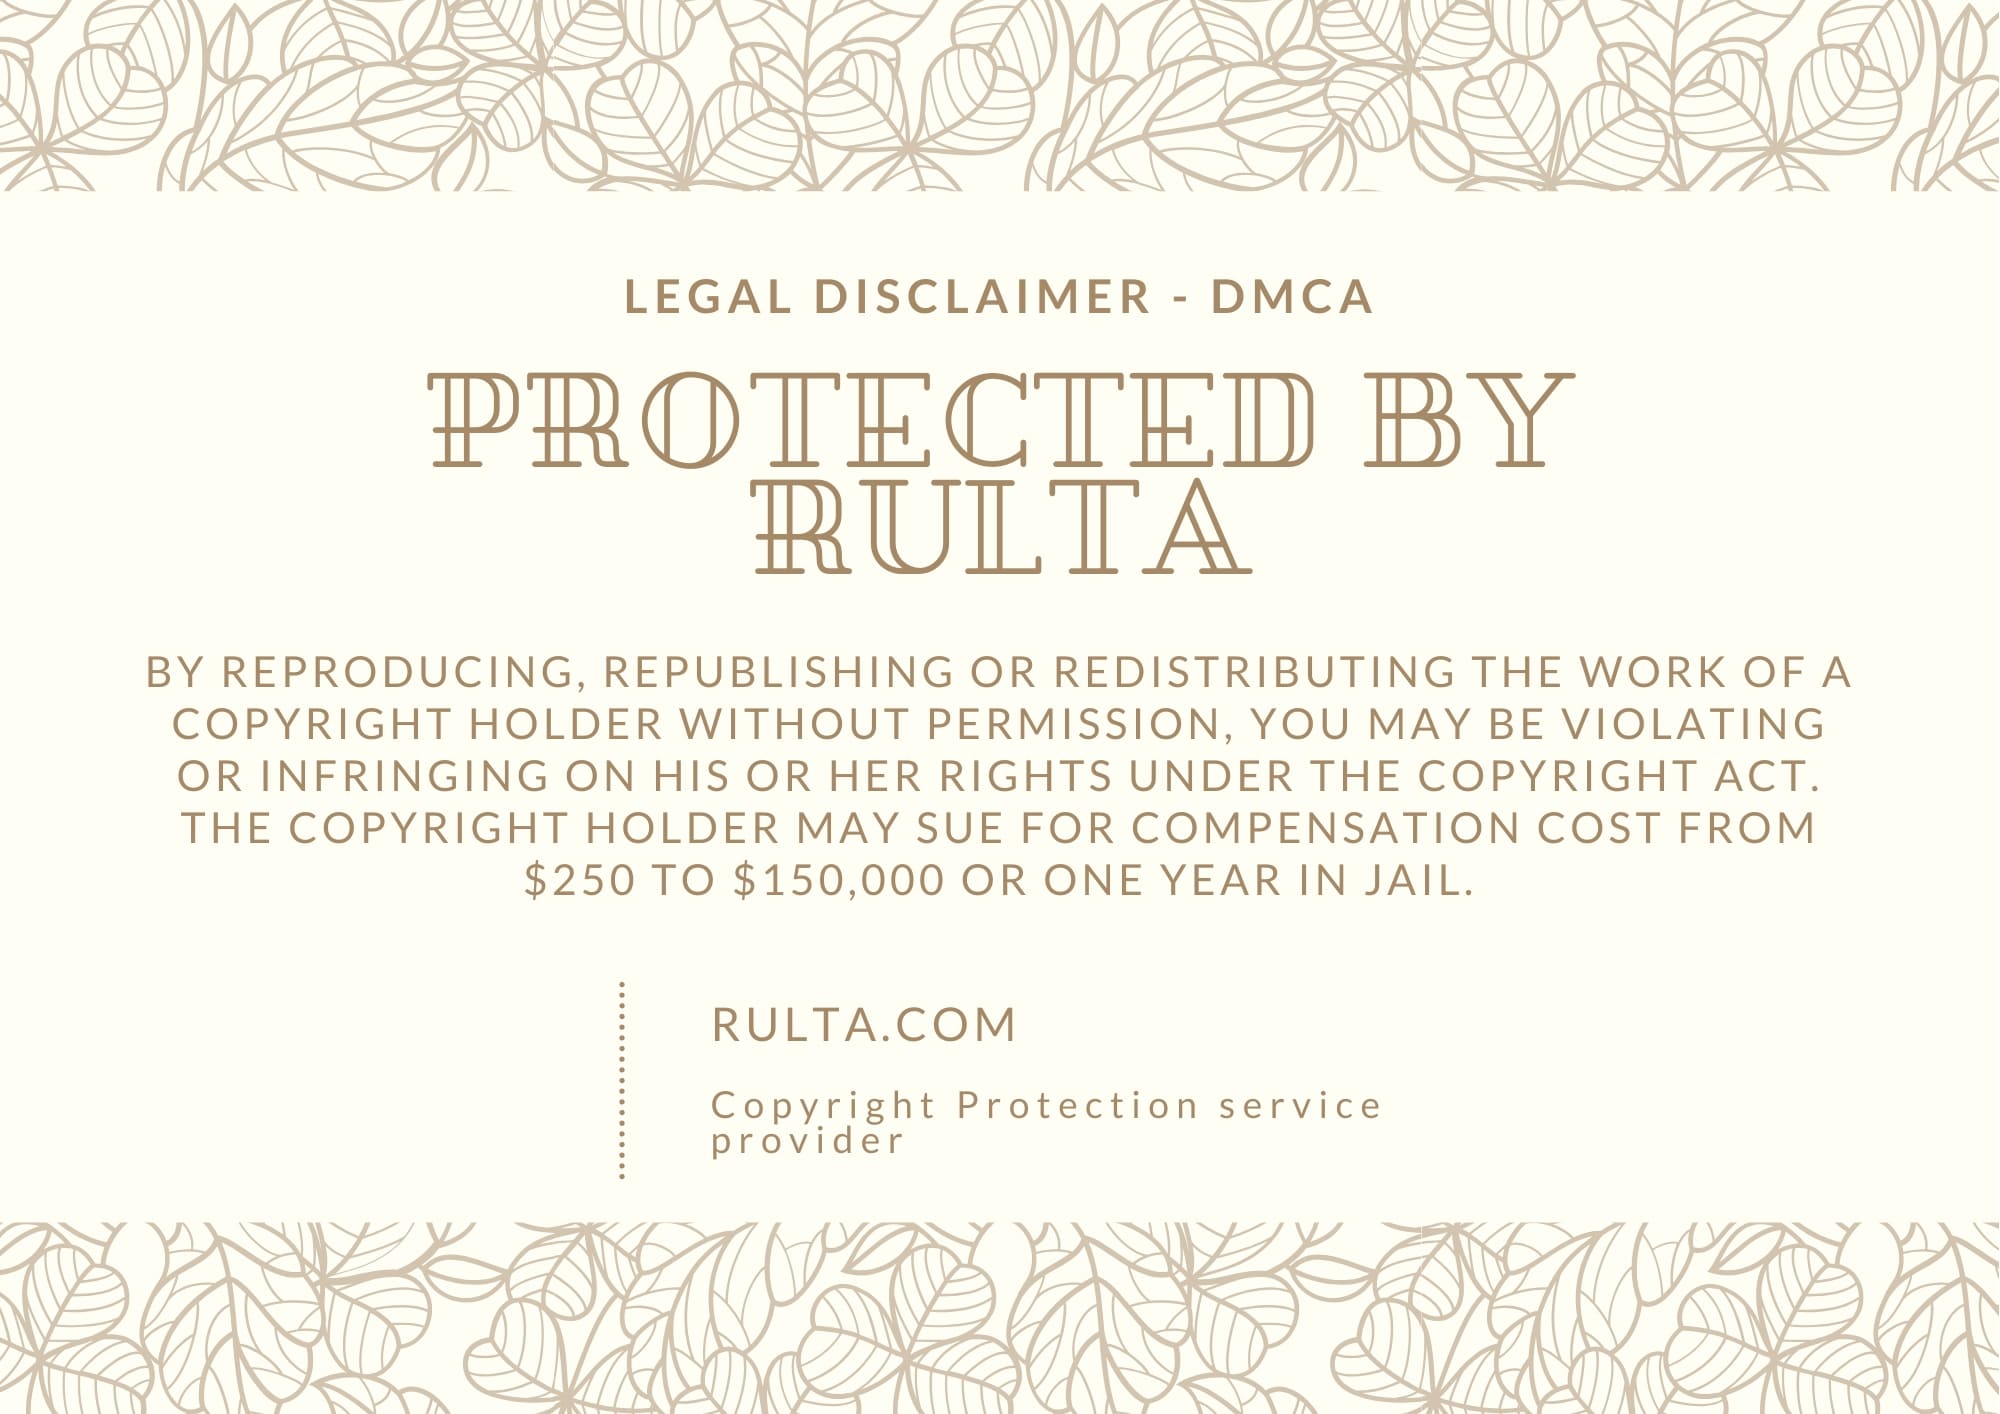 DMCA badge by Rulta - 2